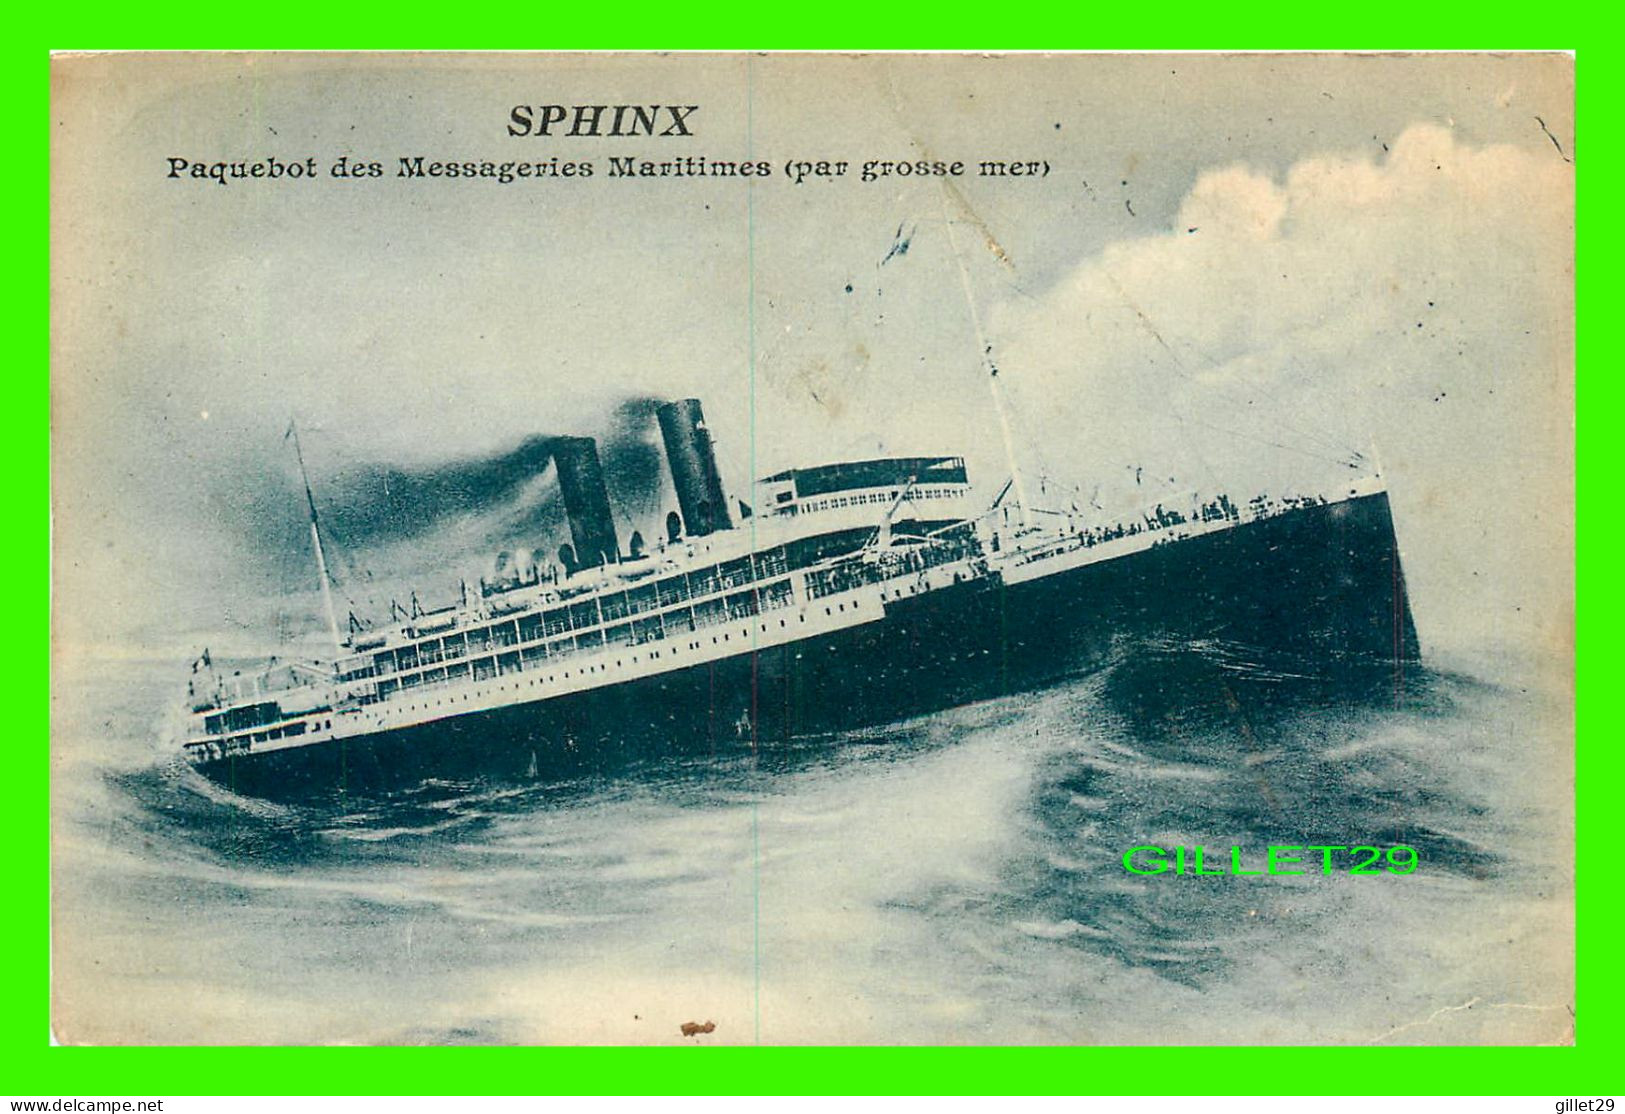 SHIP, BATEAU - " SPHINX " PAQUEBOT DES MESSAGERIES MARITIMES PAR GROSSE MER - BOURELLY, PHOTO-ÉDITEUR - - Paquebote